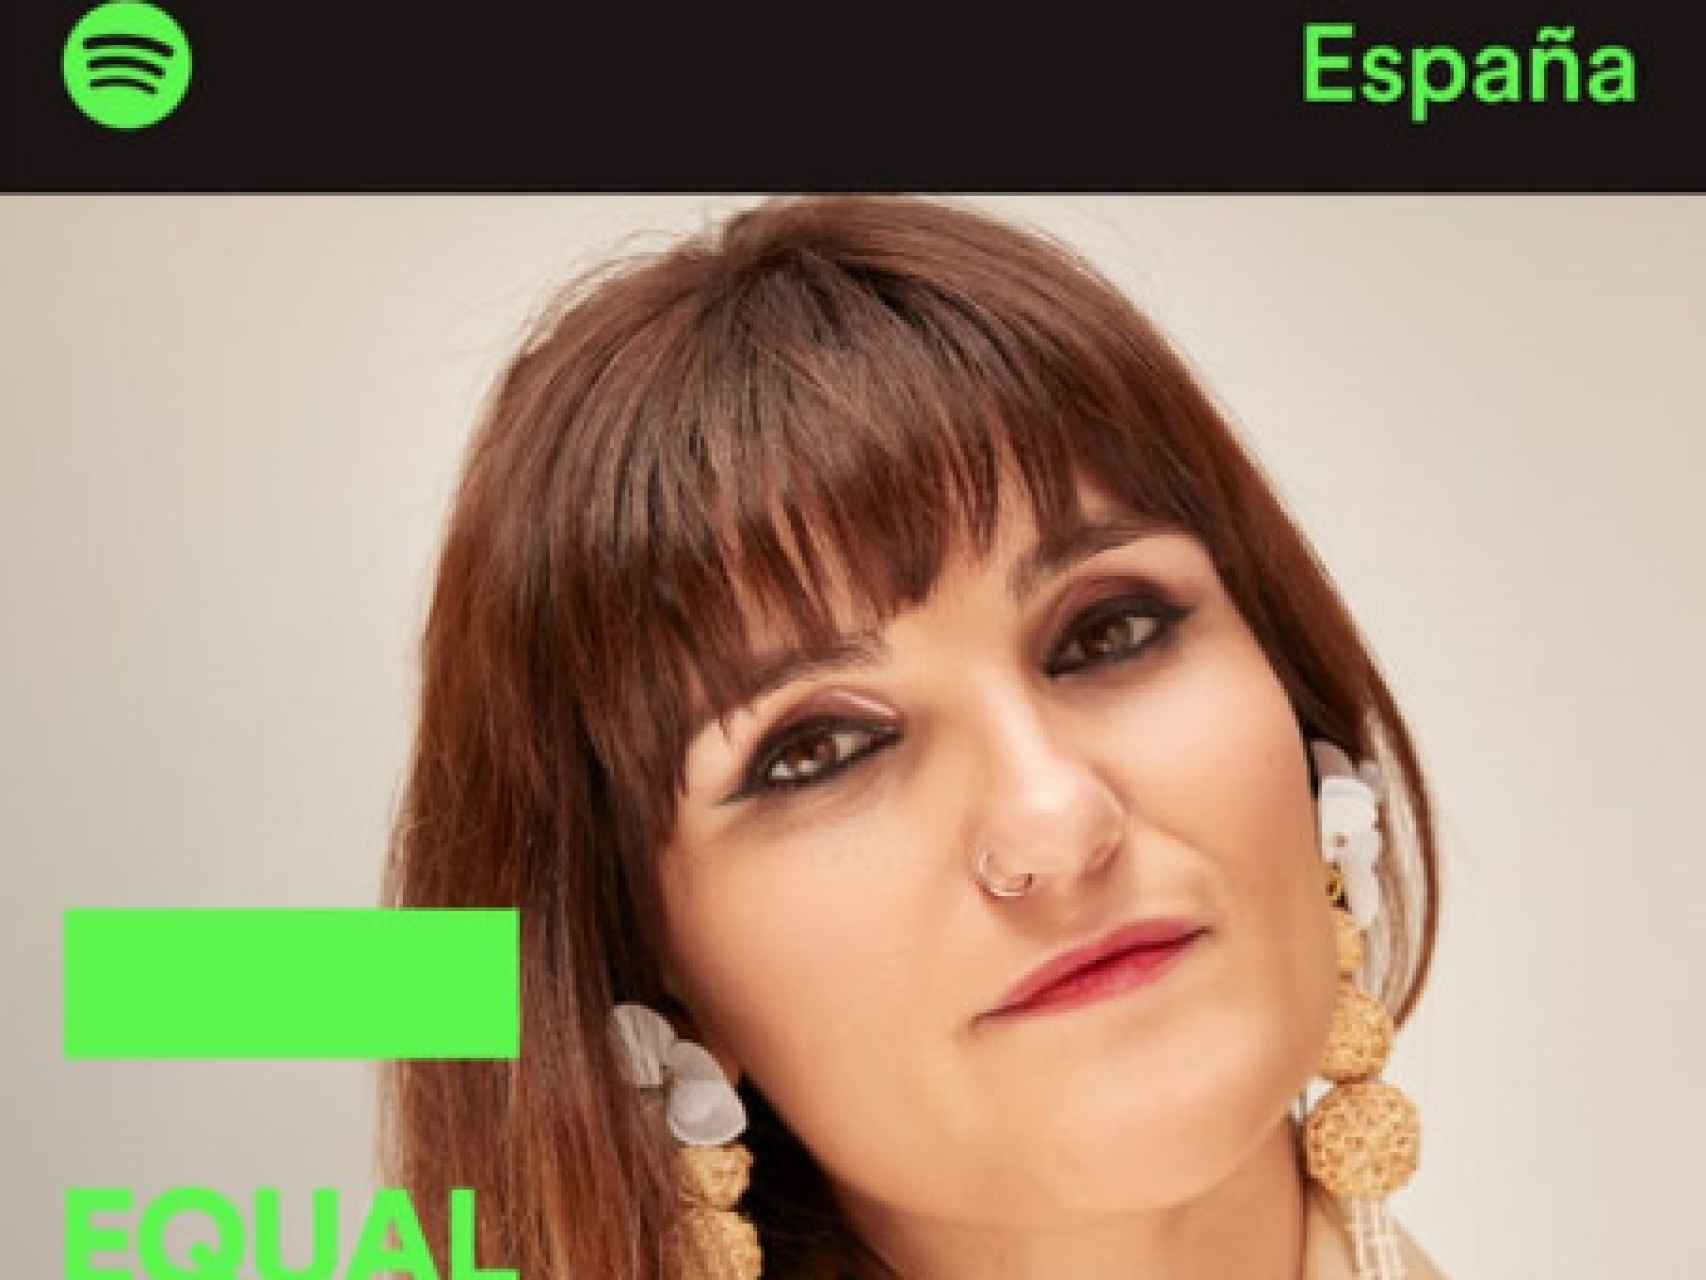 Rozalén es la primera artista en salir en EQUAL España, perteneciente a Spotify.